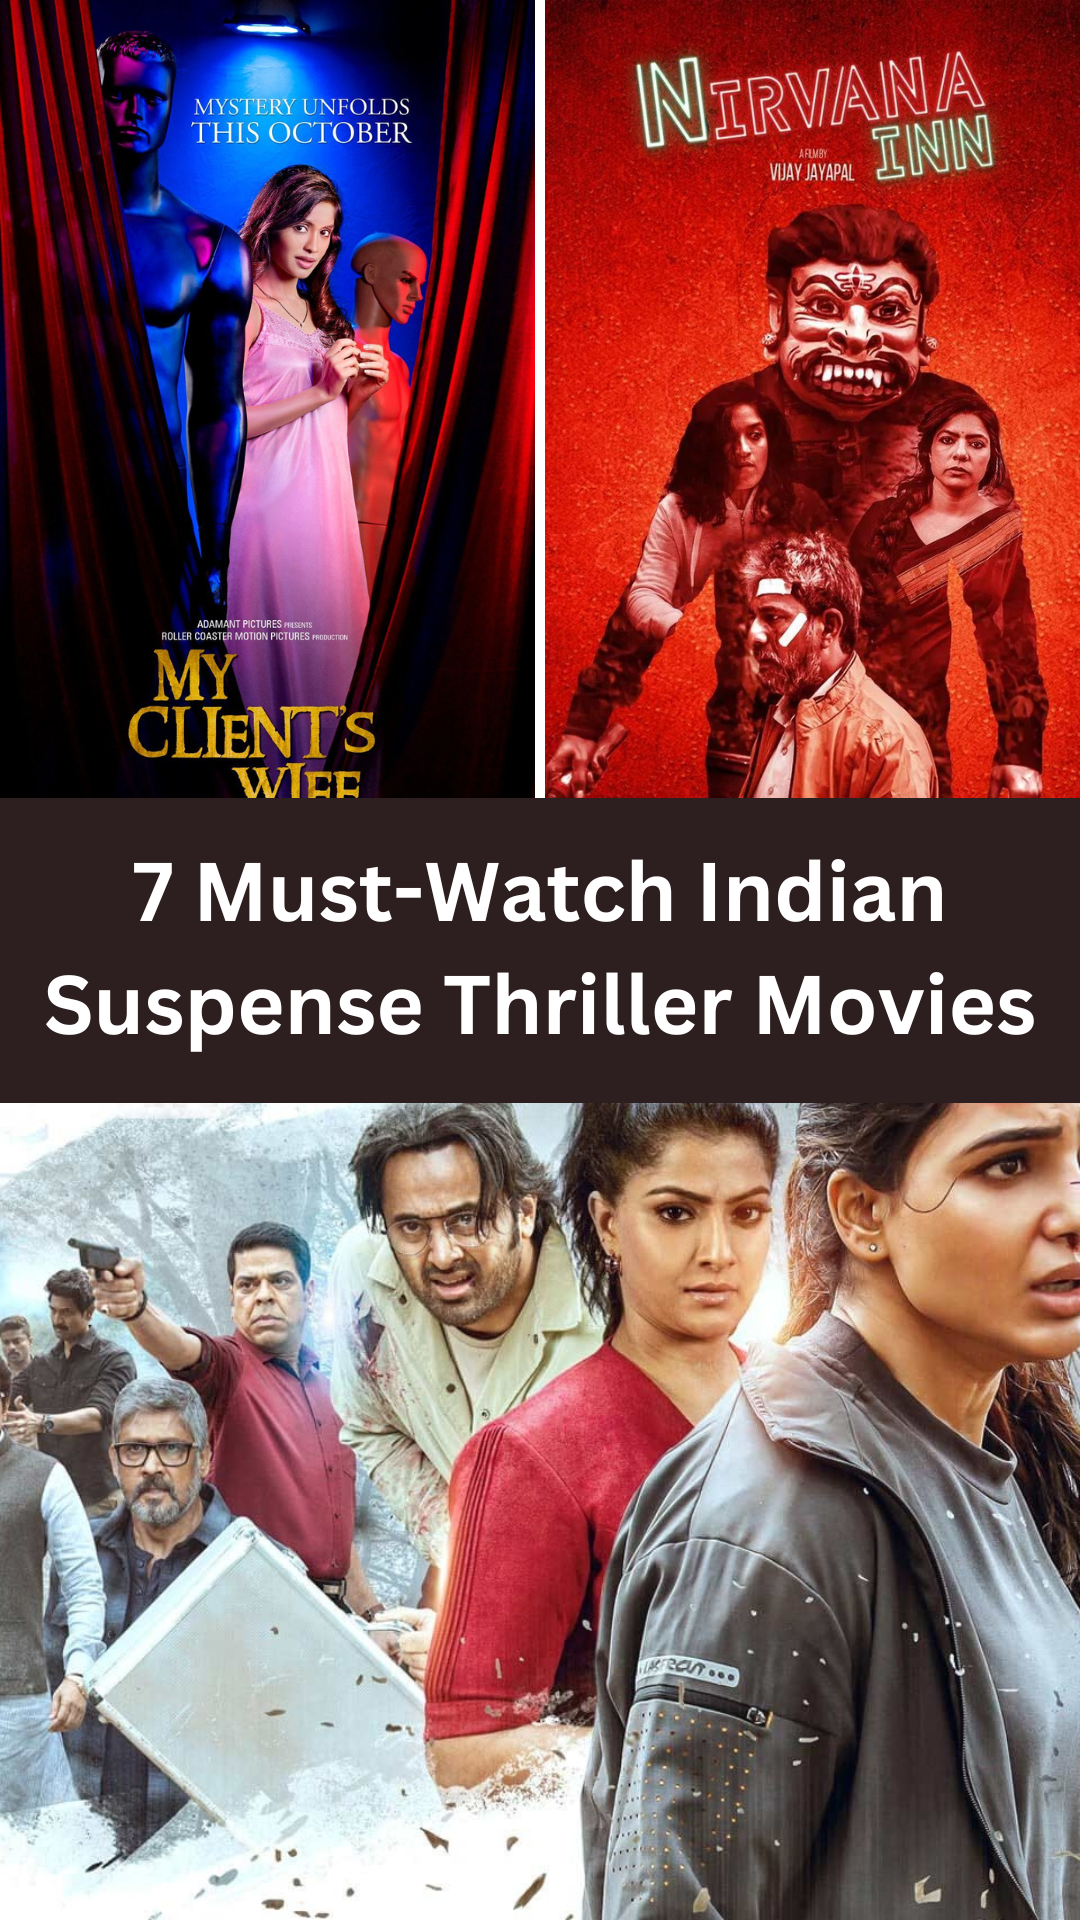 7 Must-Watch Indian Suspense Thriller Movies